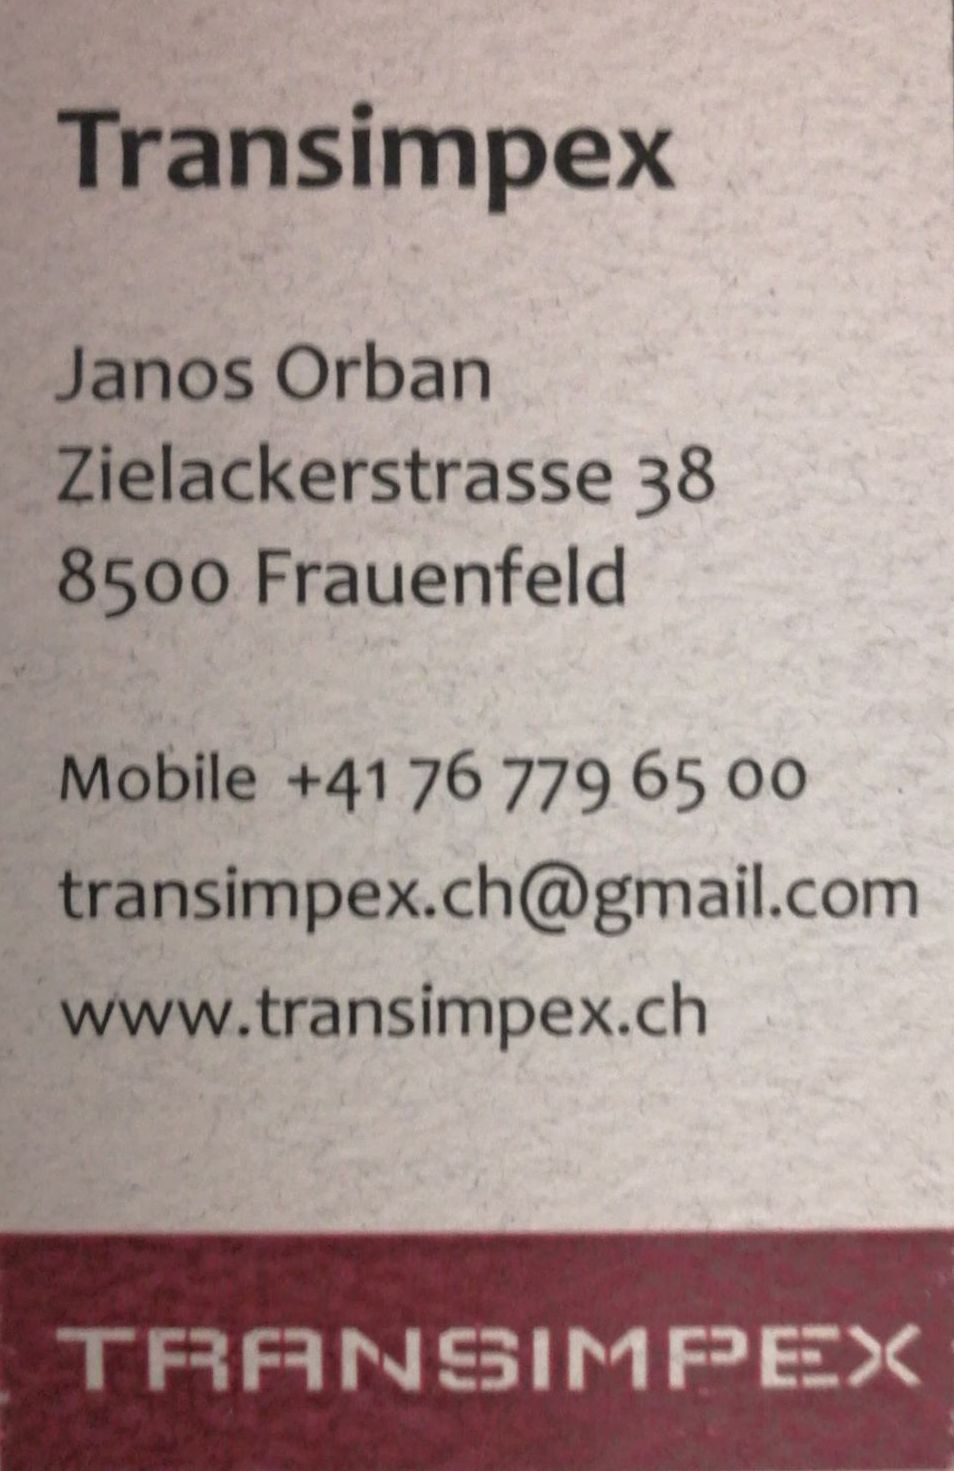 Nemzetközi Költözetetés - Transimpex - Orbán János